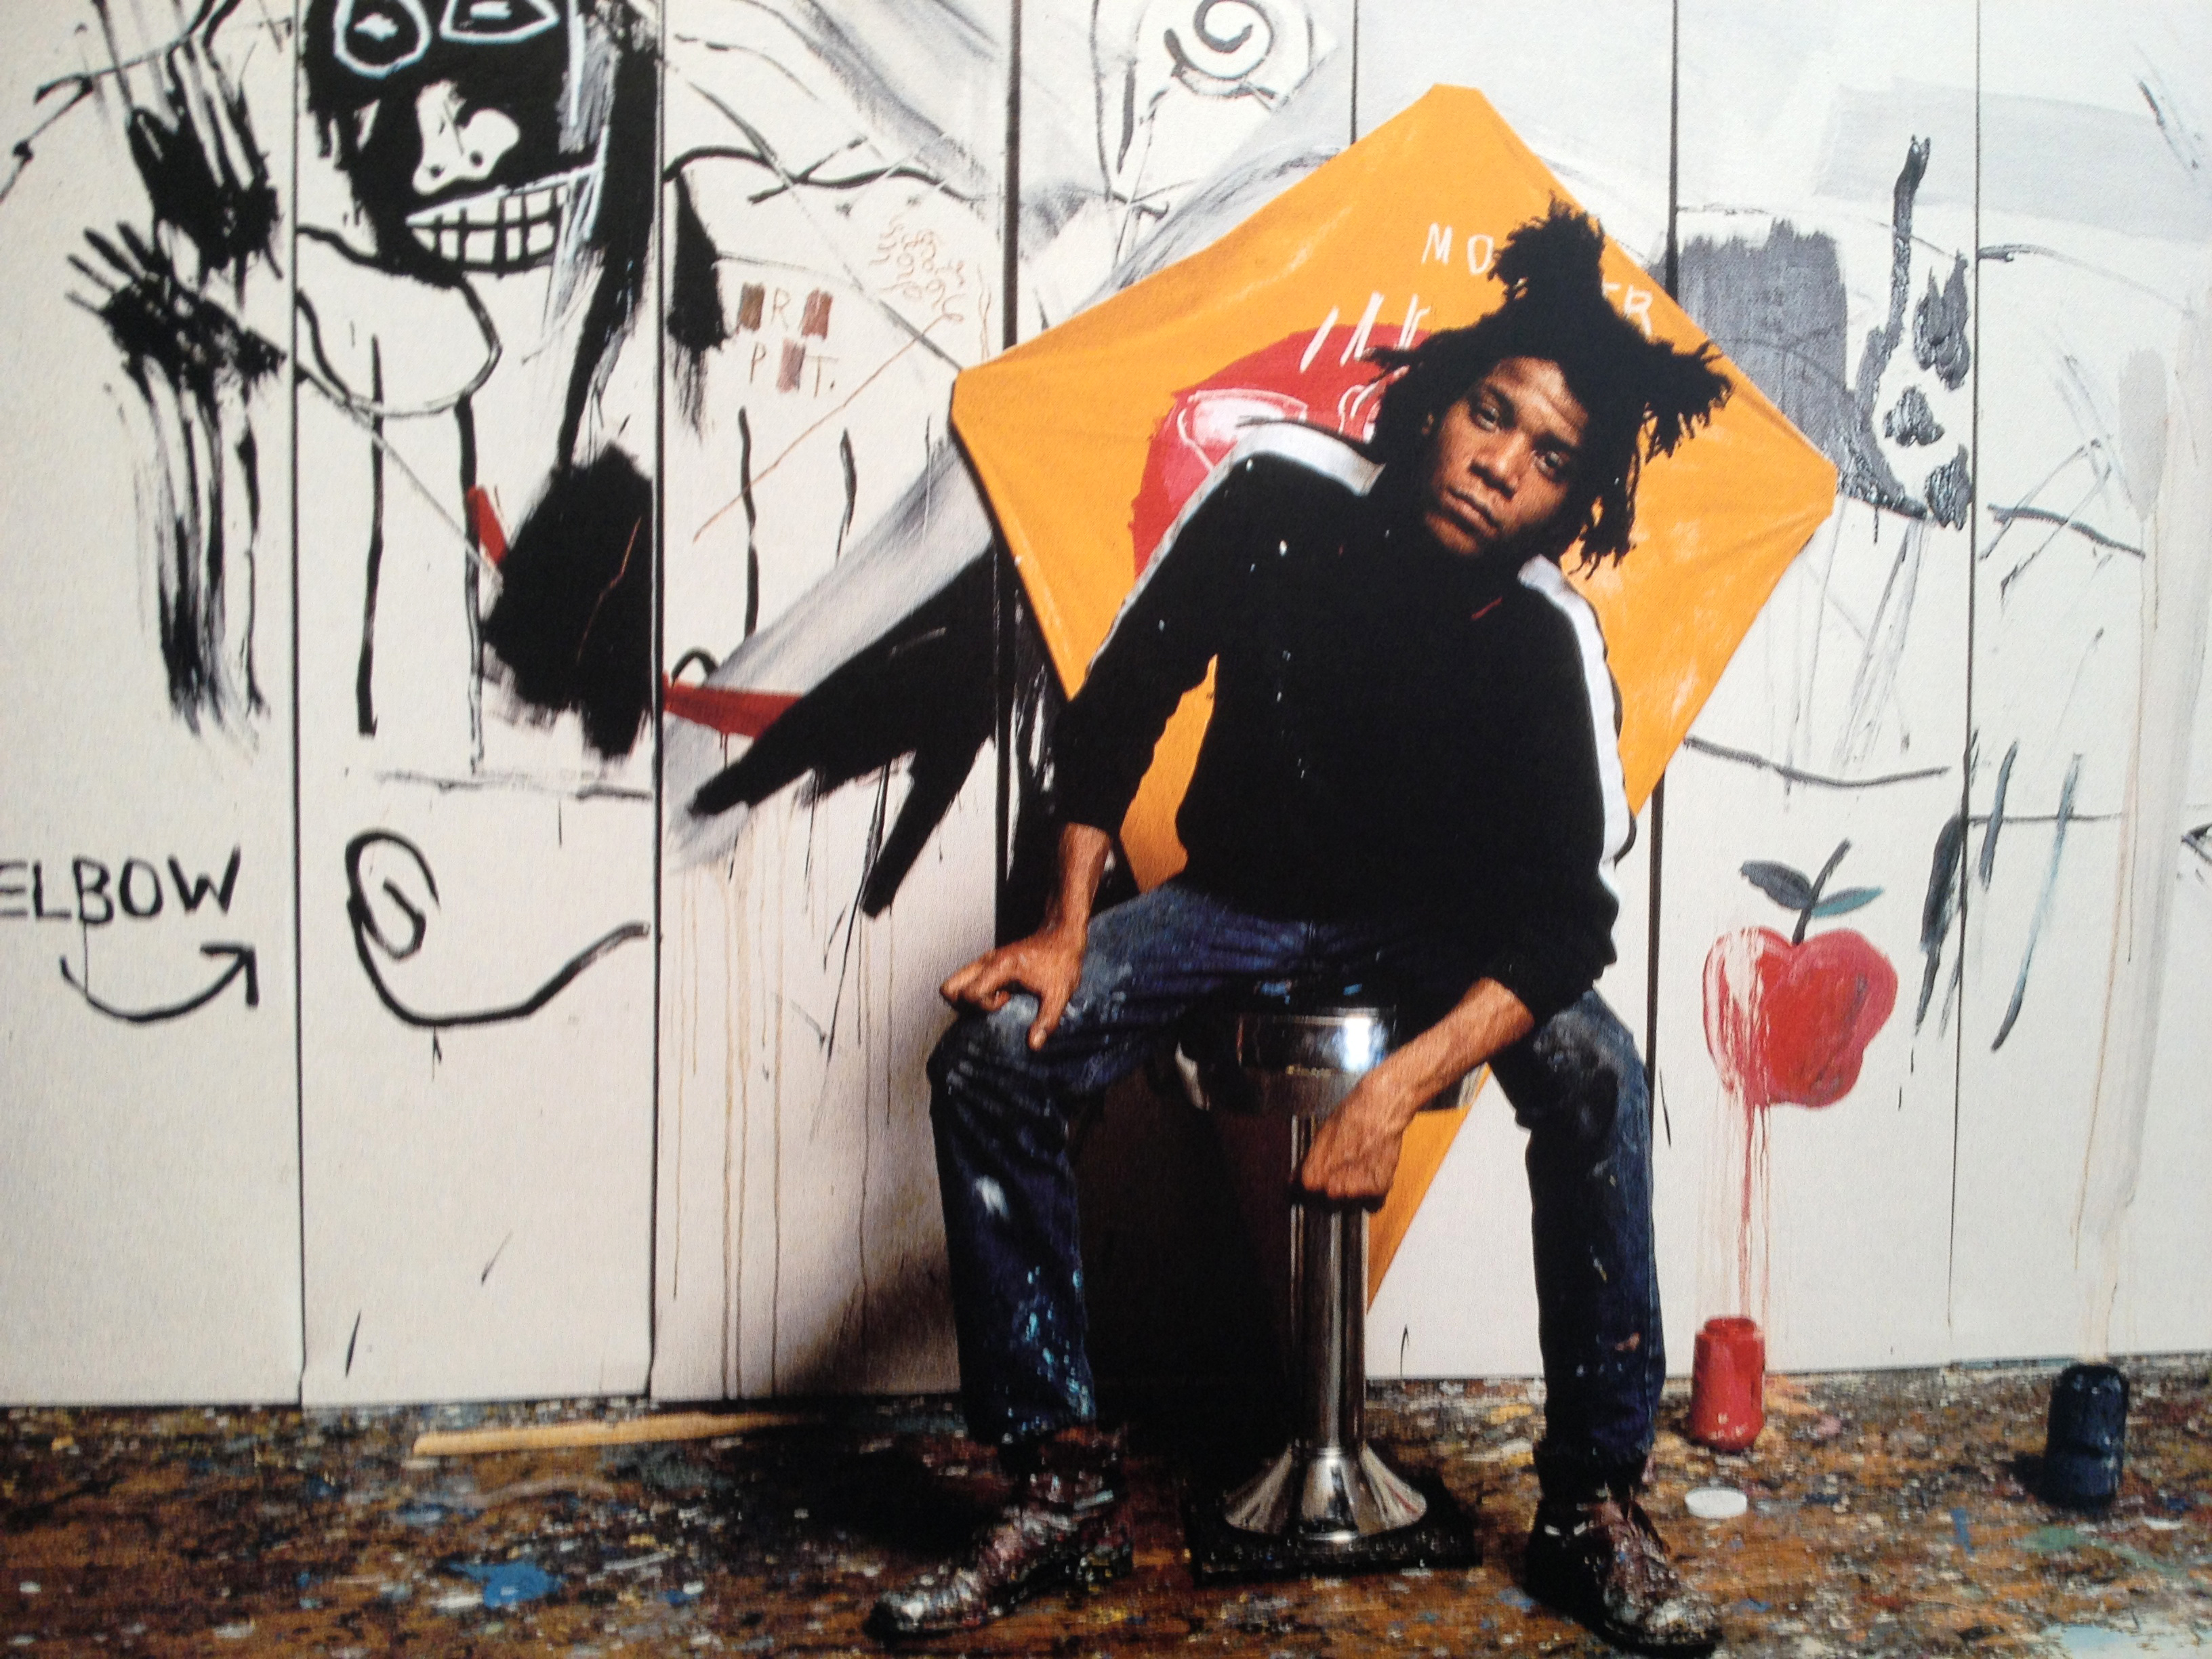 Jean-Michel Basquiat - December 22, 1960 - August 12, 1988